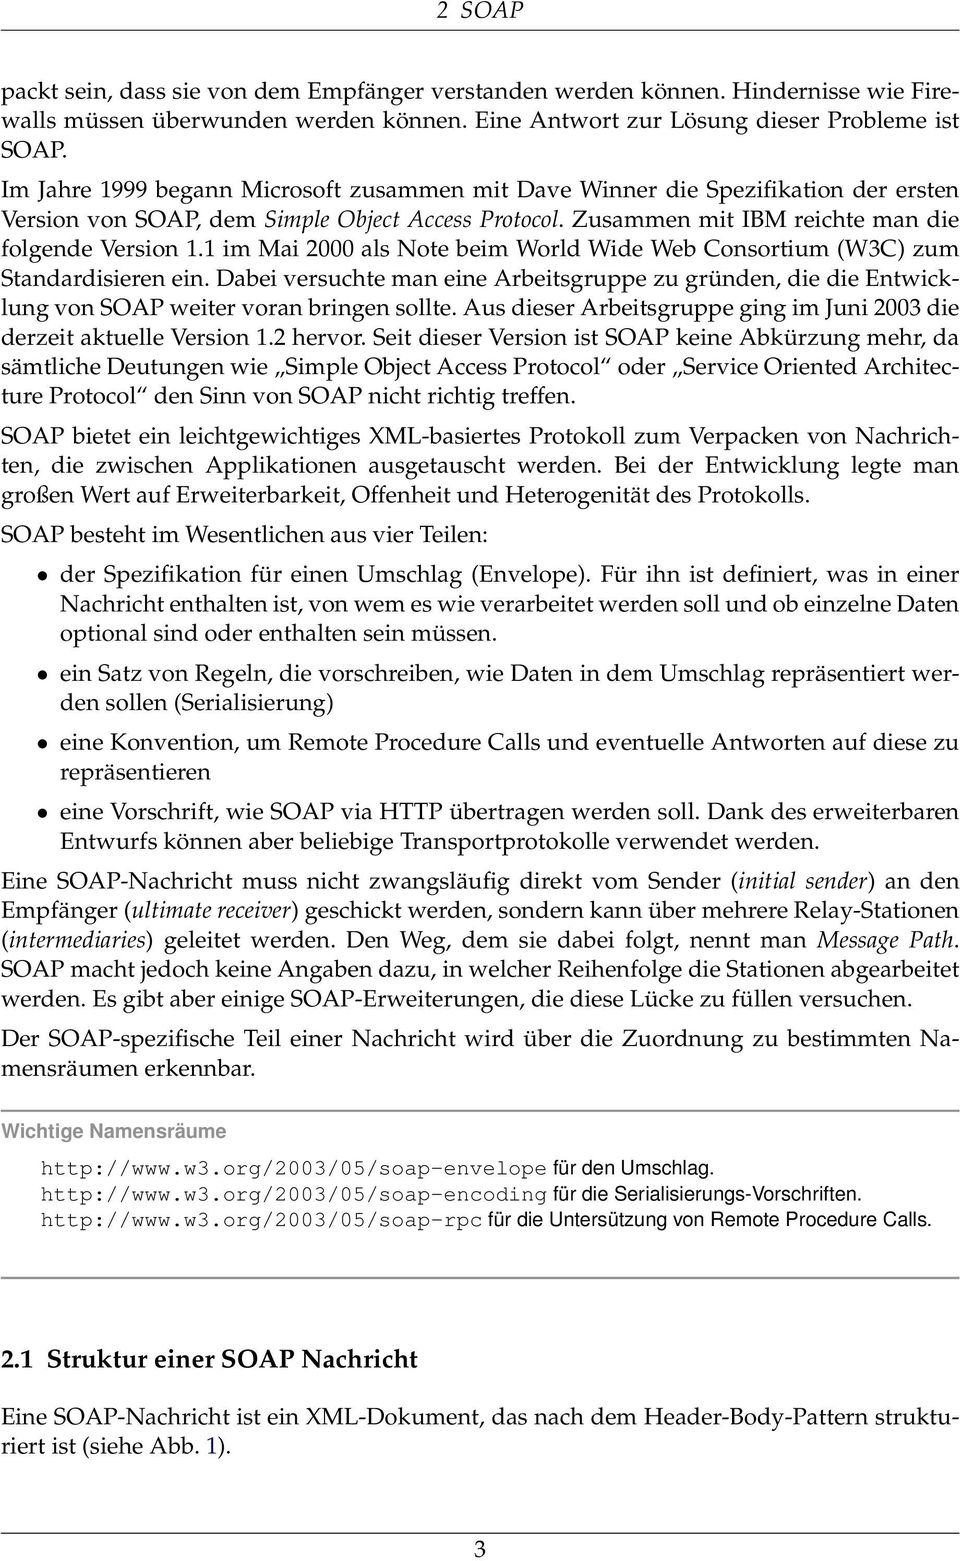 1 im Mai 2000 als Note beim World Wide Web Consortium (W3C) zum Standardisieren ein. Dabei versuchte man eine Arbeitsgruppe zu gründen, die die Entwicklung von SOAP weiter voran bringen sollte.